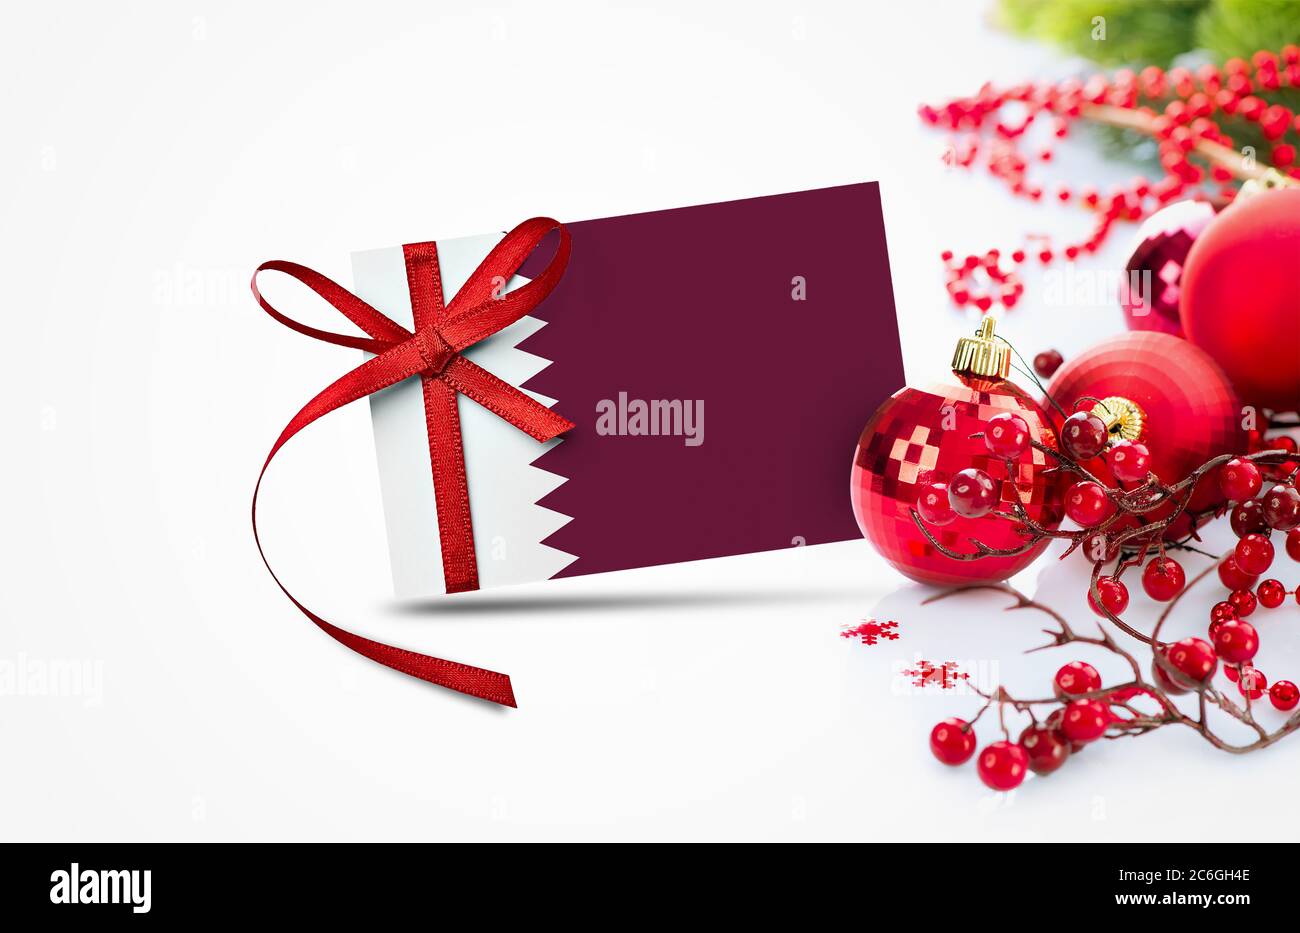 Qatar Flagge auf Neujahr Einladungskarte mit roten weihnachtsschmuck Konzept. National Happy New Year Komposition. Stockfoto